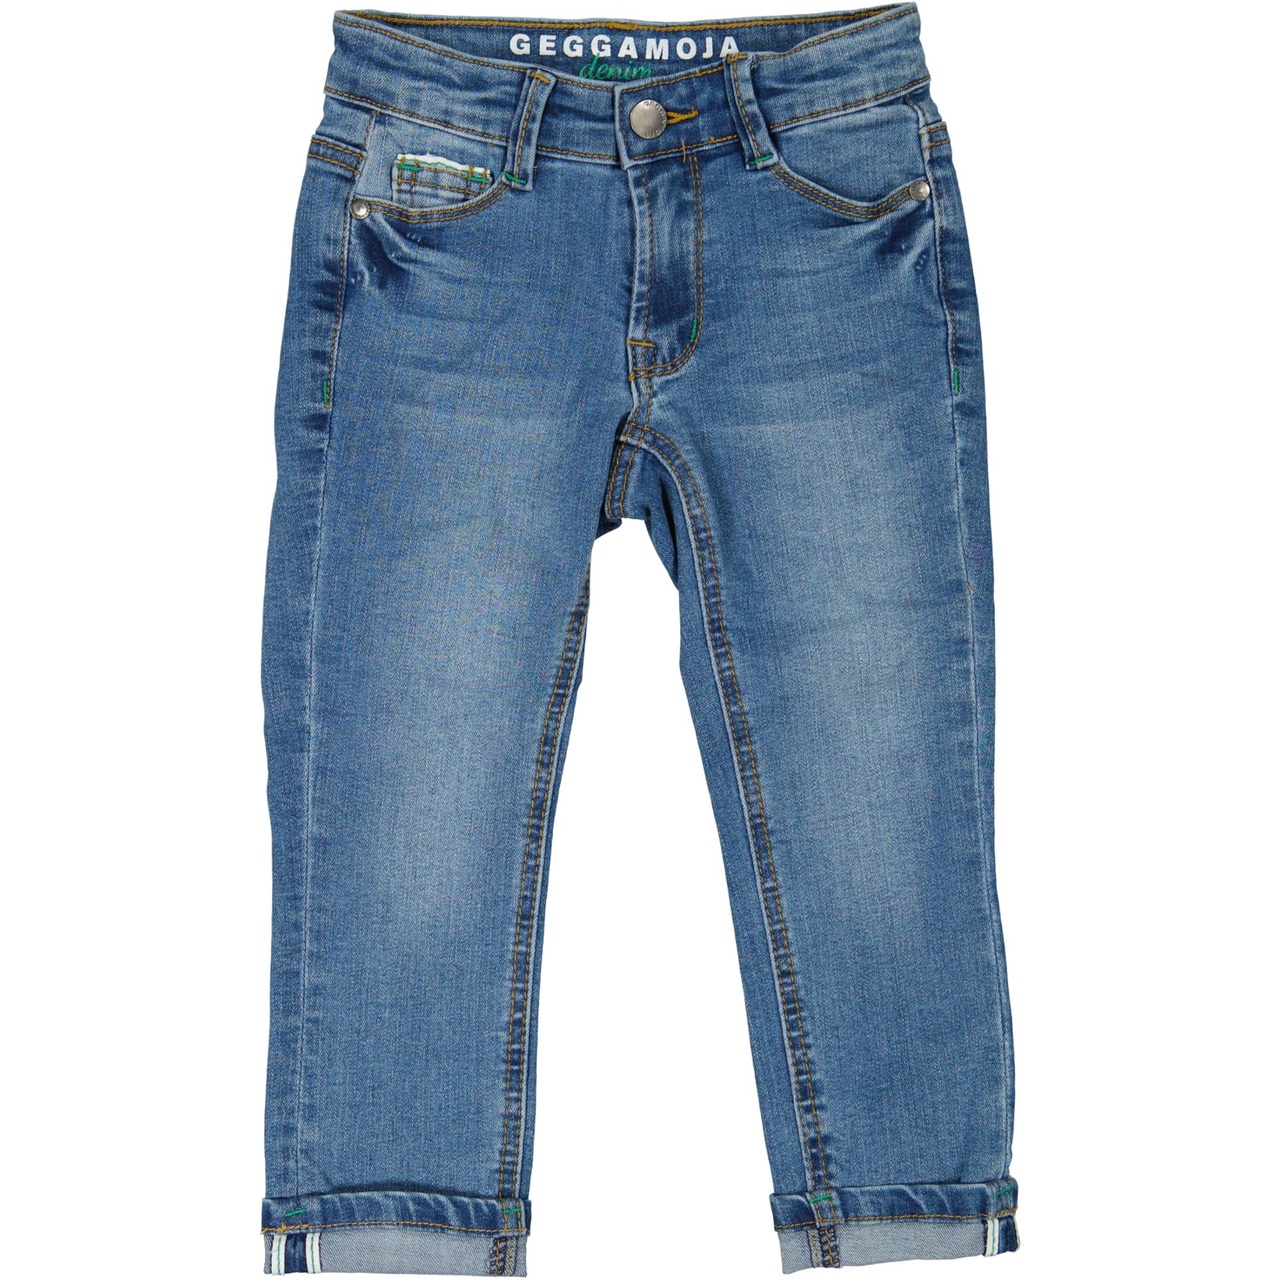 Unisex 5-pocket jeans Denim blue wash 110/116